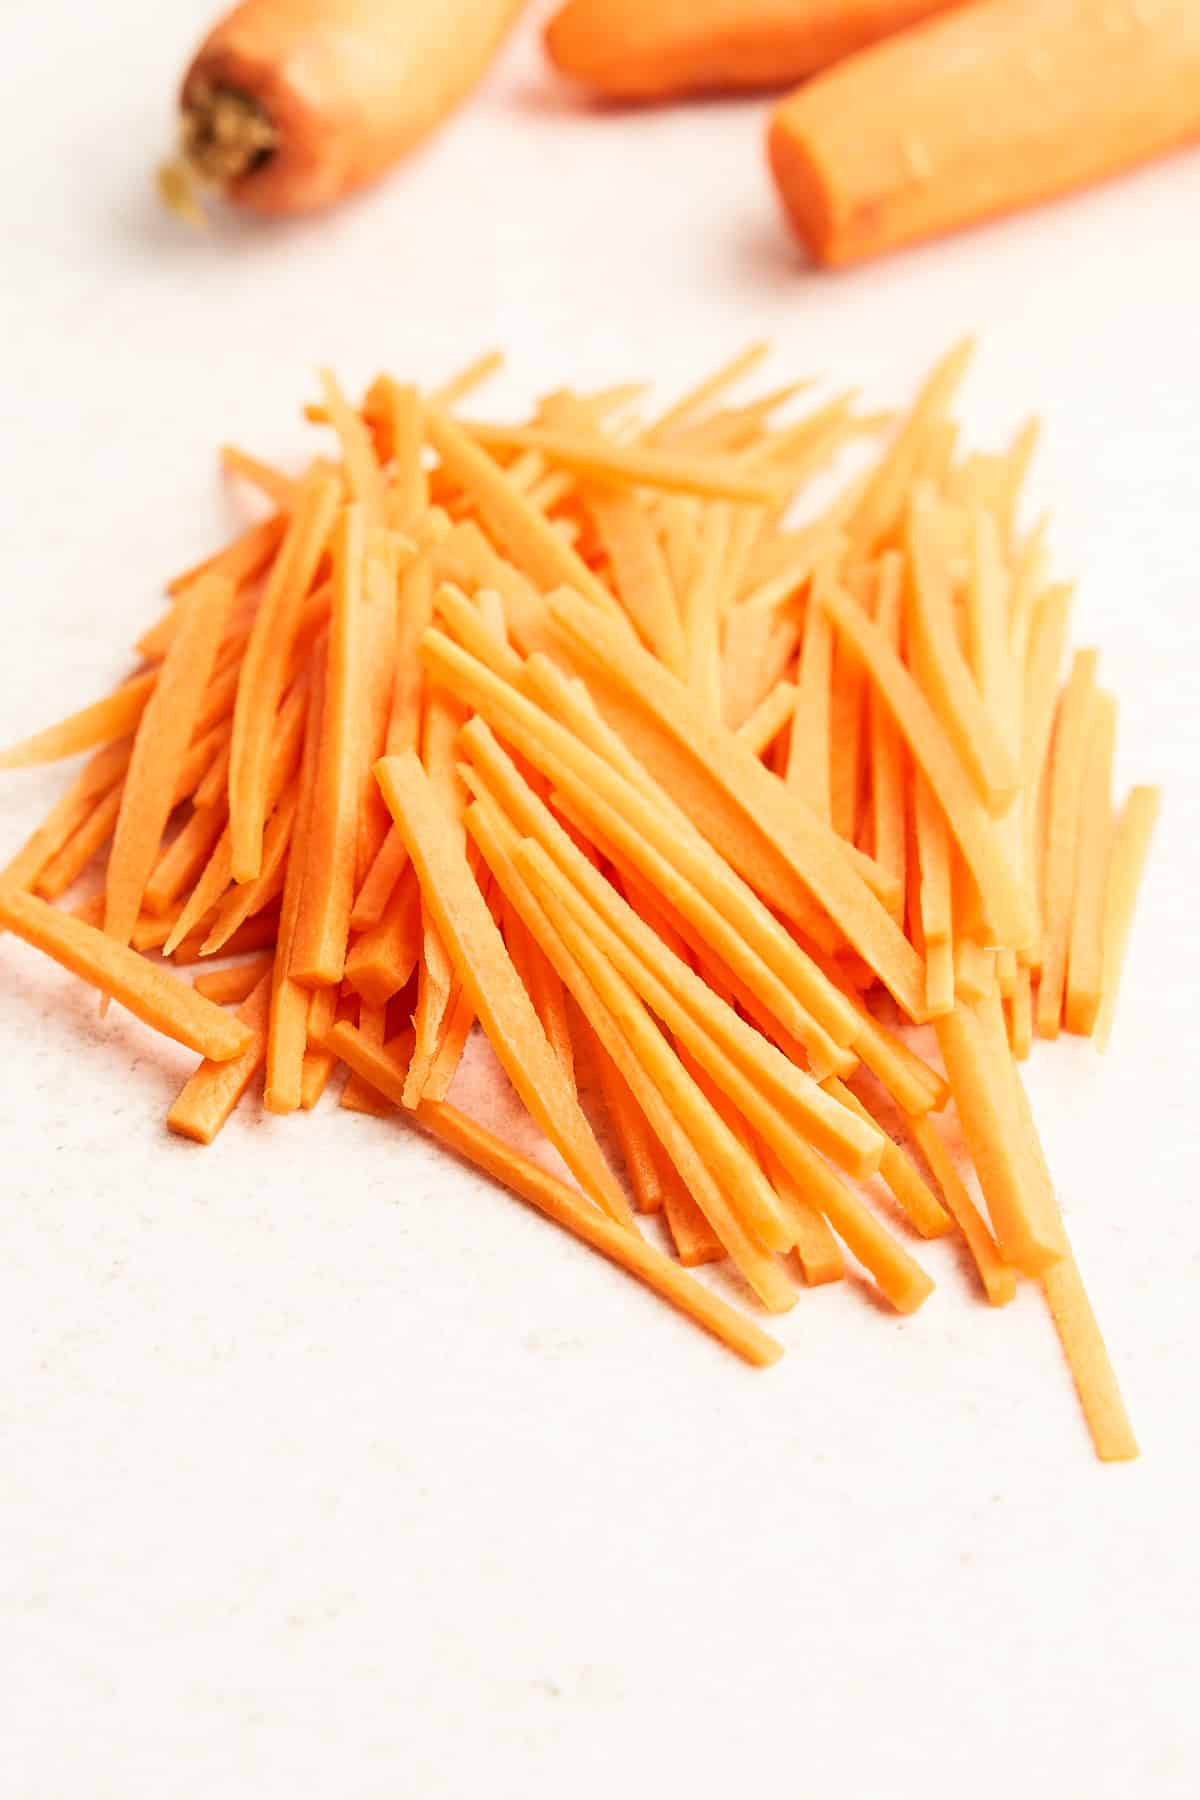 Carrot matchsticks.